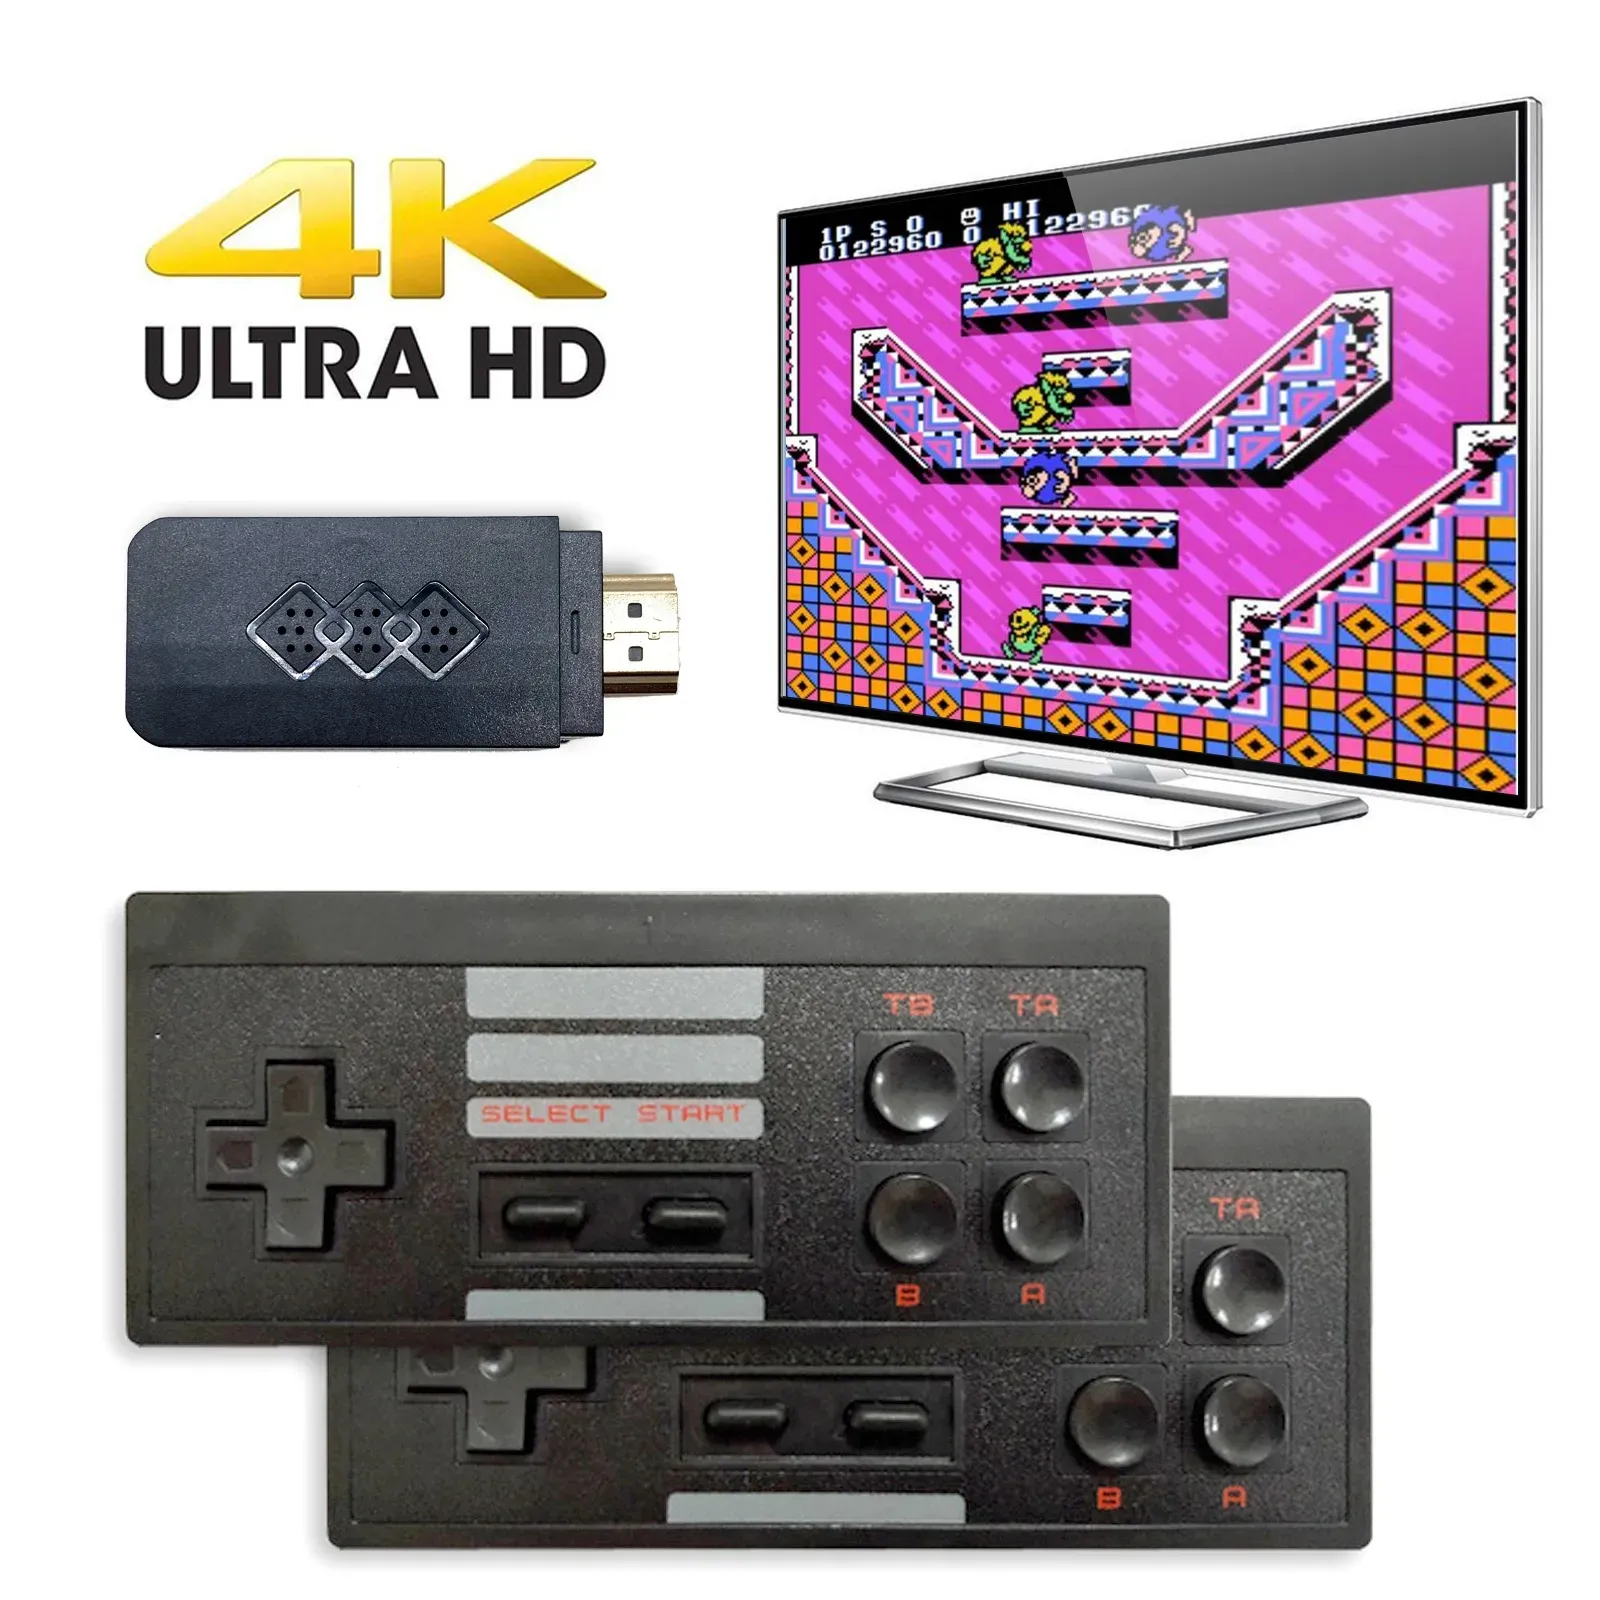 4K TV-OUT VIDEO trådlöst bärbara spelspelare handhållen Joystick HDTV 818 Retro Classic Games Consoles Gift